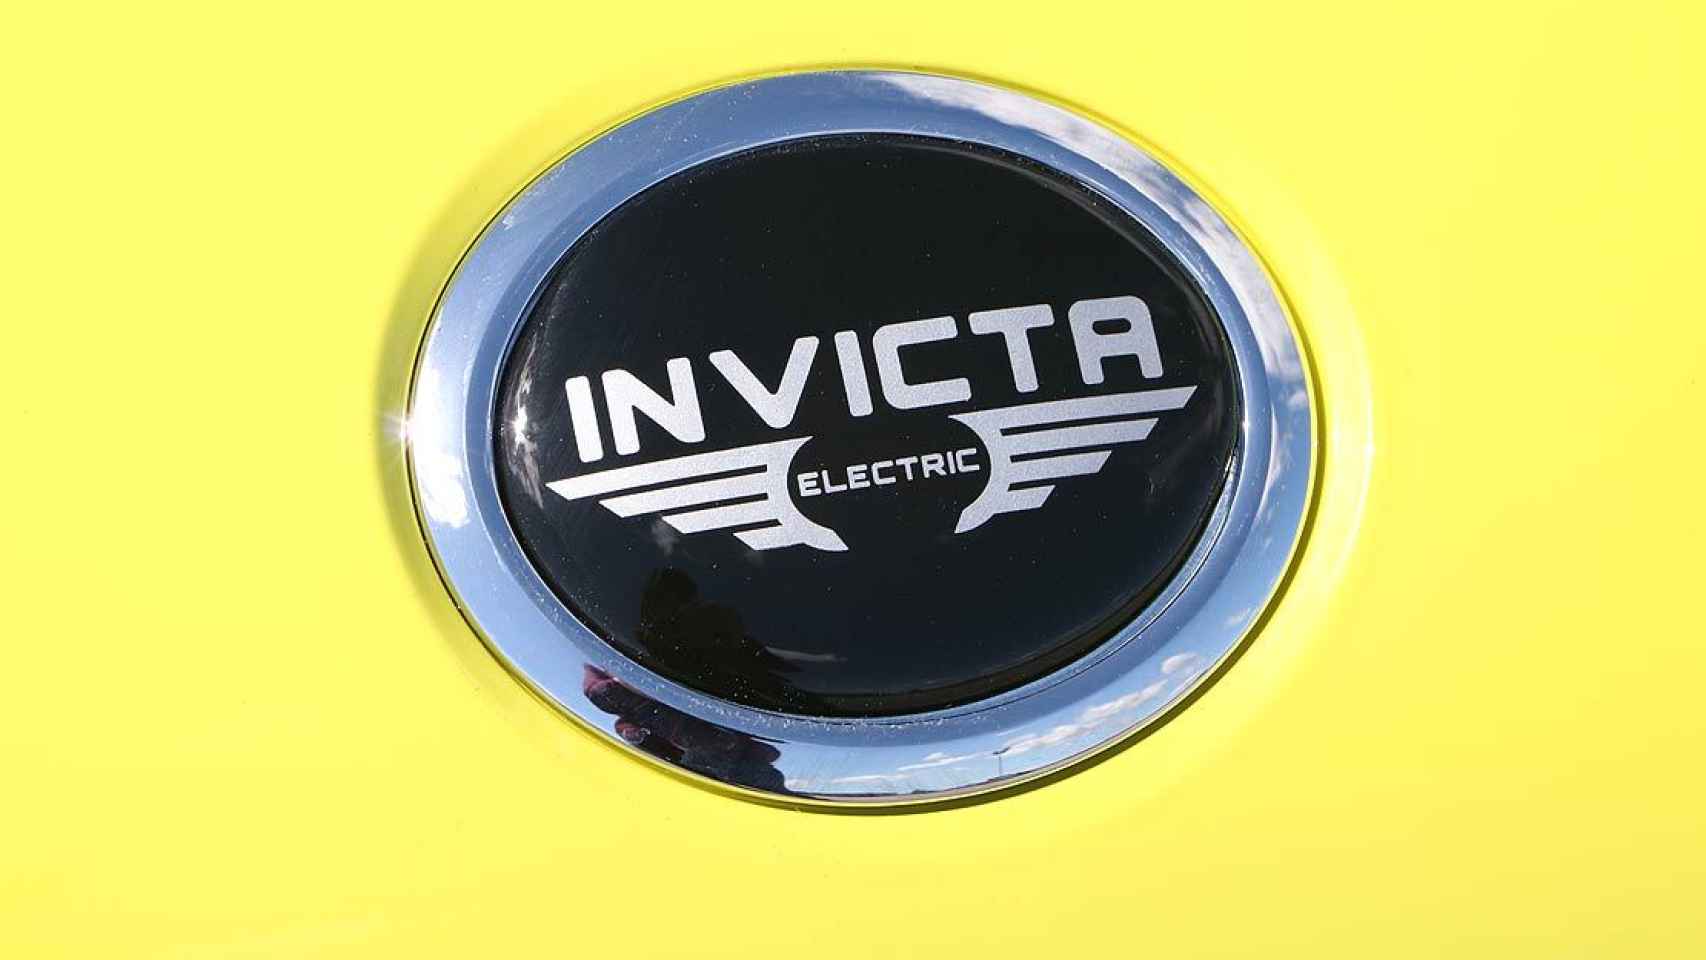 En España se vende como Invicta y en otros países com Zhidou.